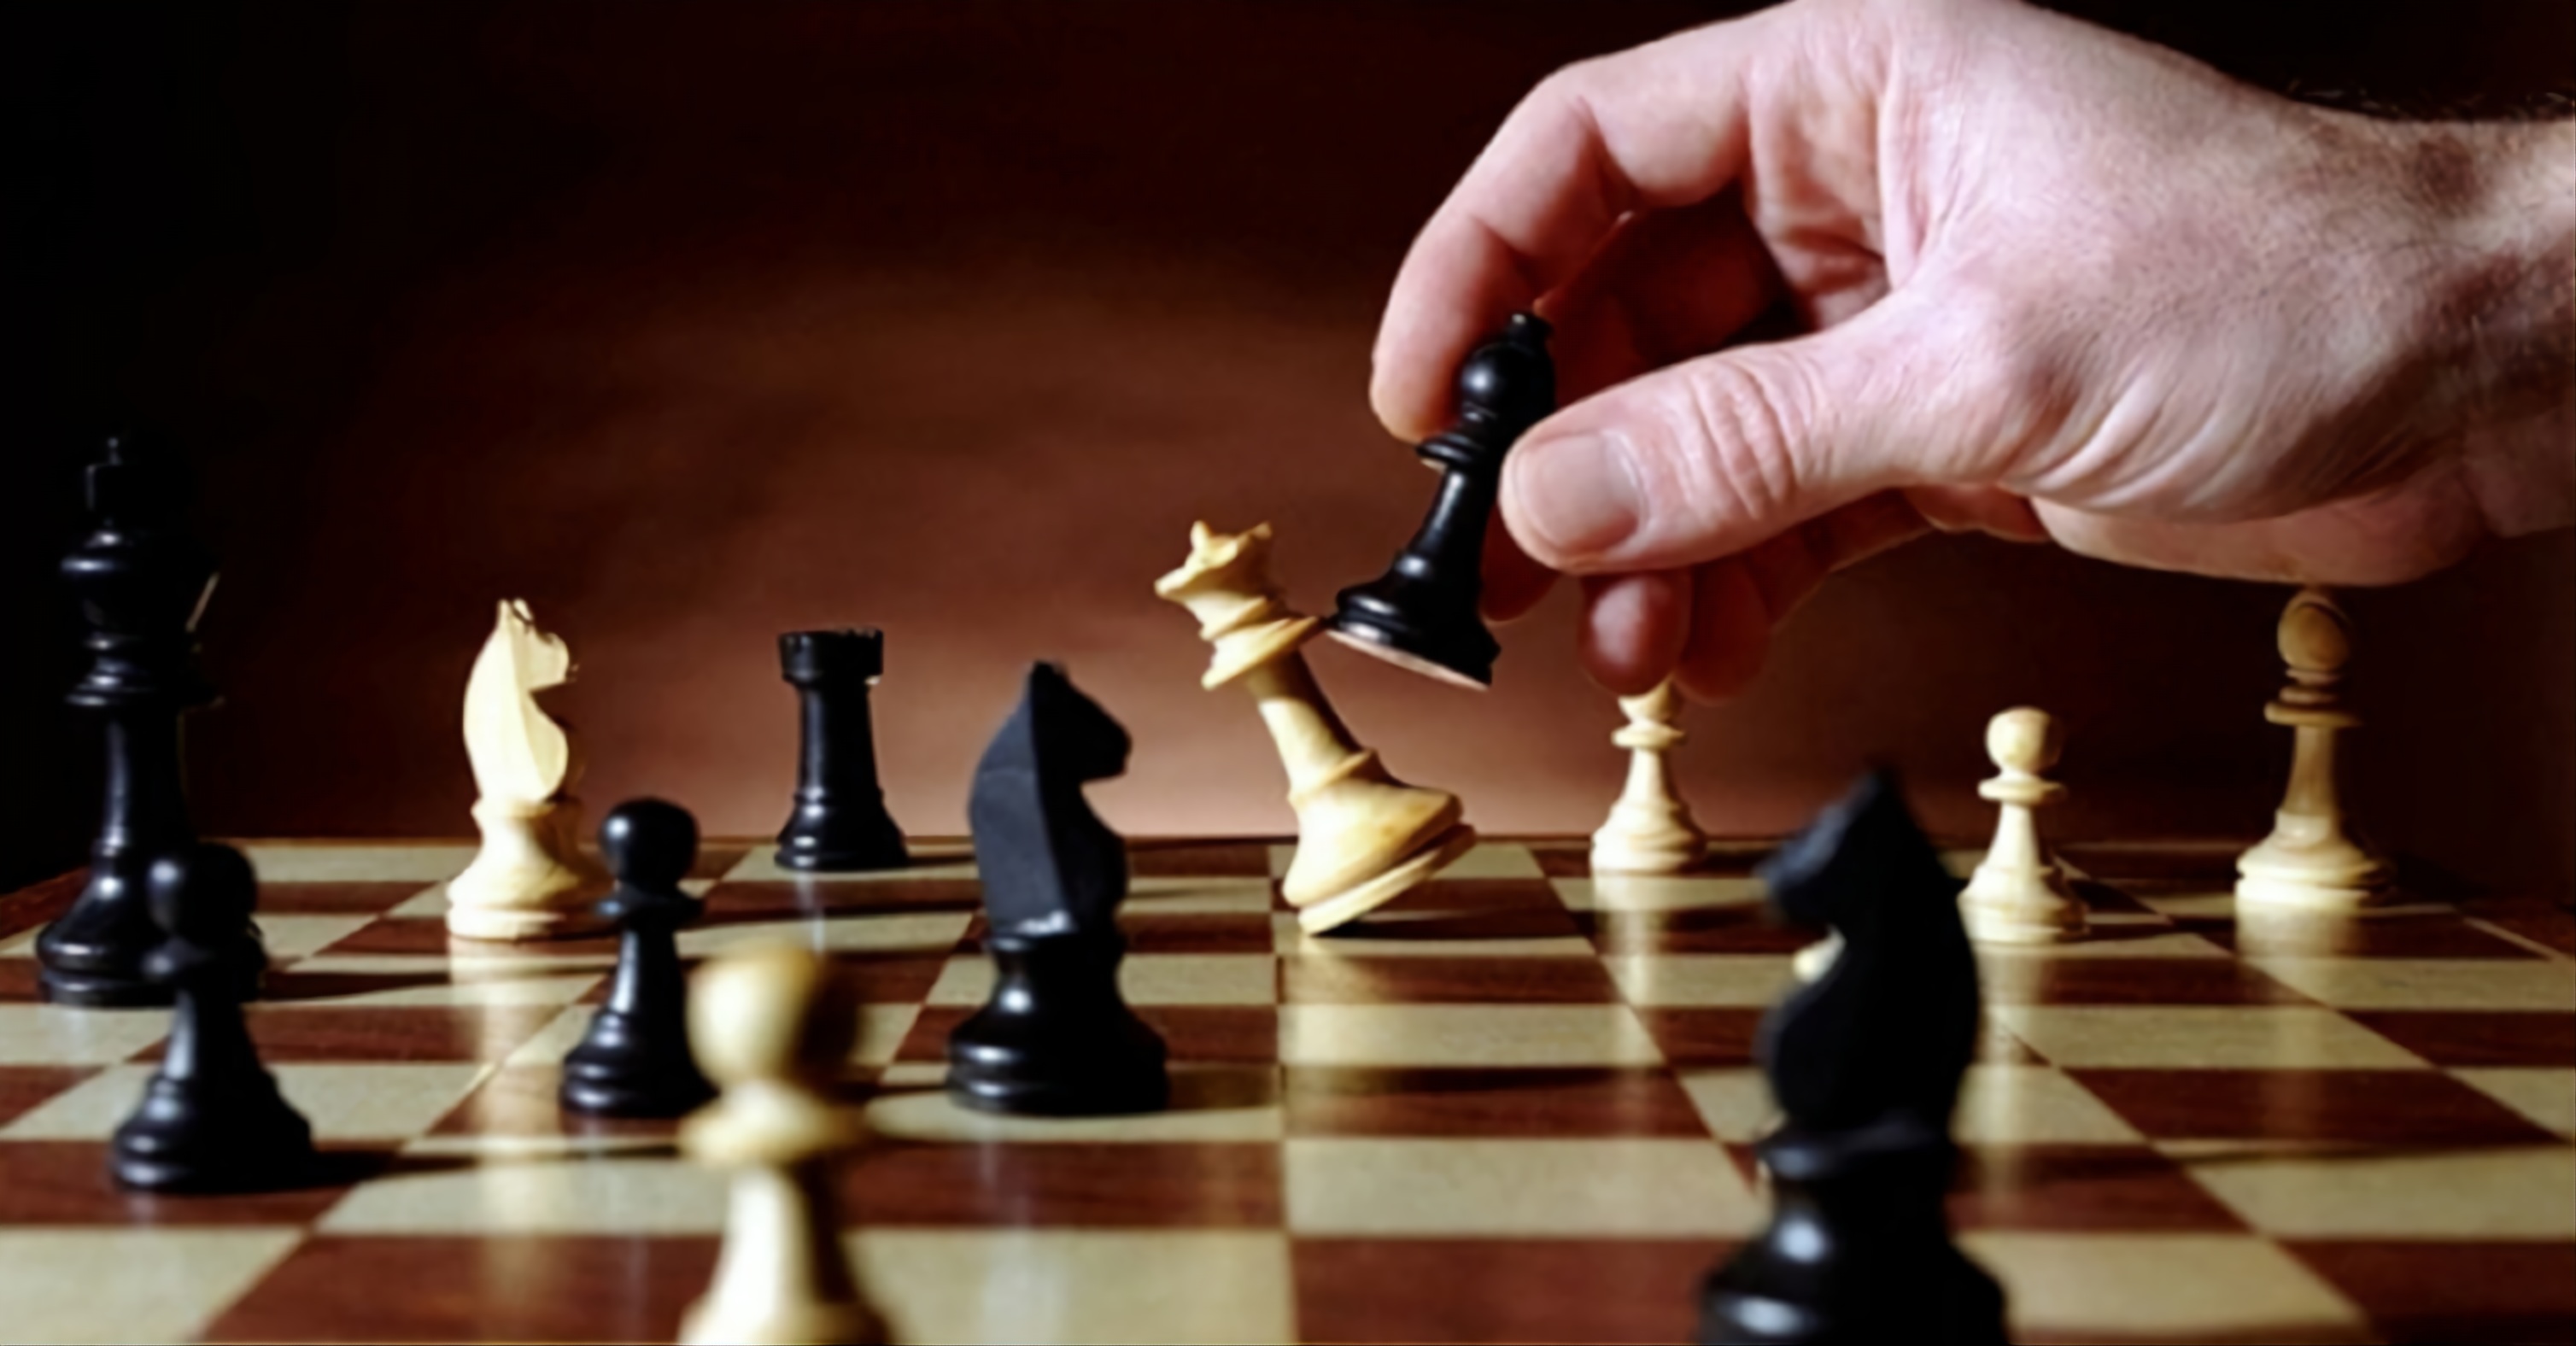 Prepare a sua estratégia: vem aí o Campeonato Nacional de Xadrez